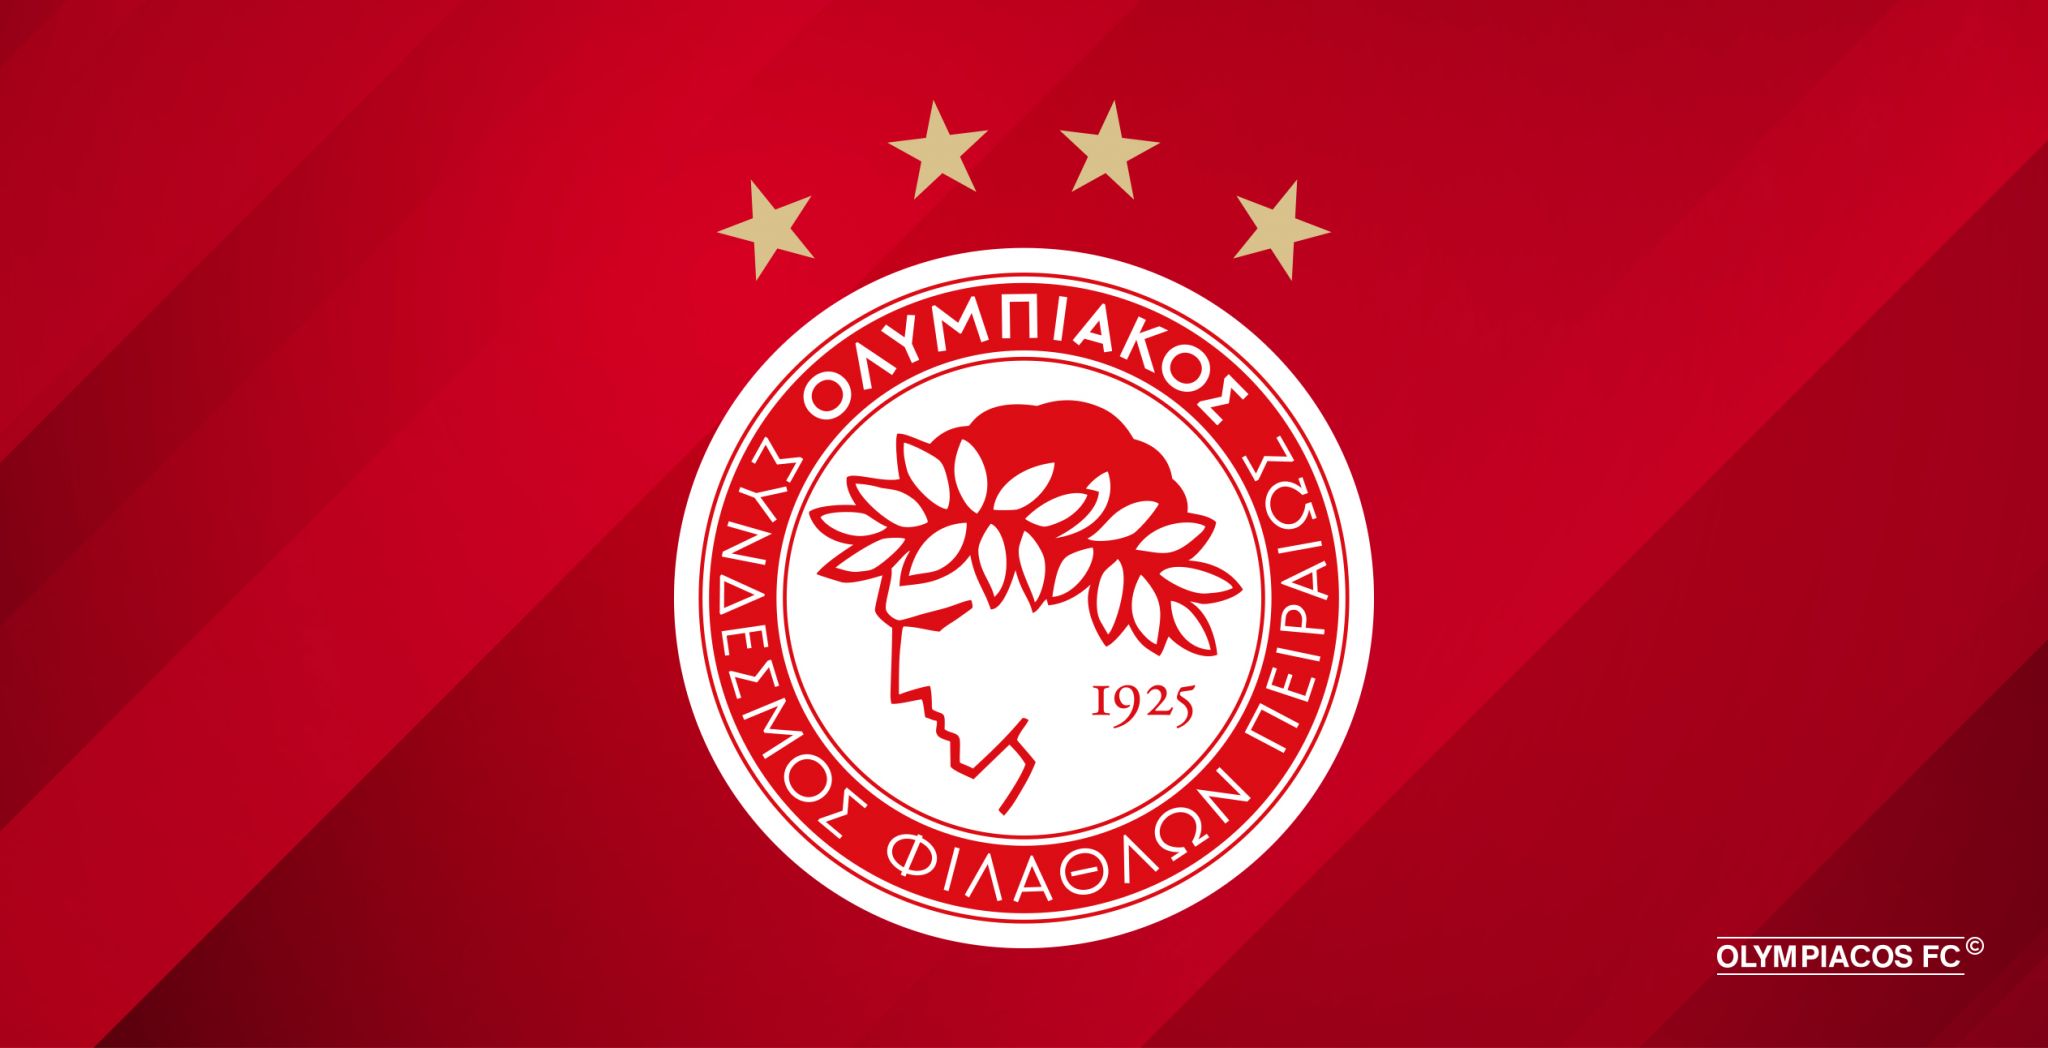 Communiqué de presse de l’Olympiacos FC